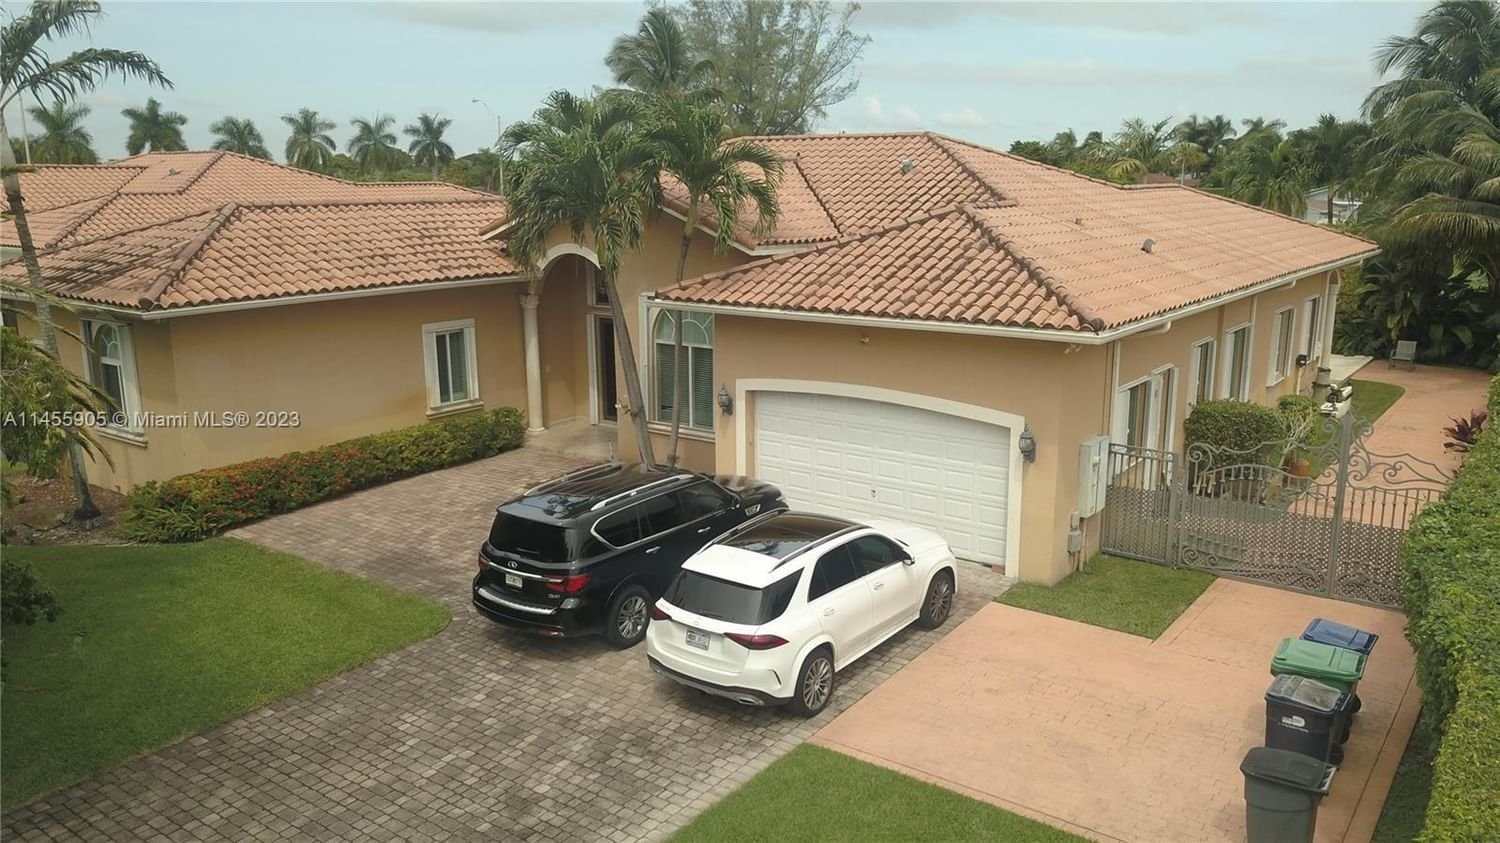 Real estate property located at 12553 76th St, Miami-Dade County, GRANADA HOME ESTATES, Miami, FL